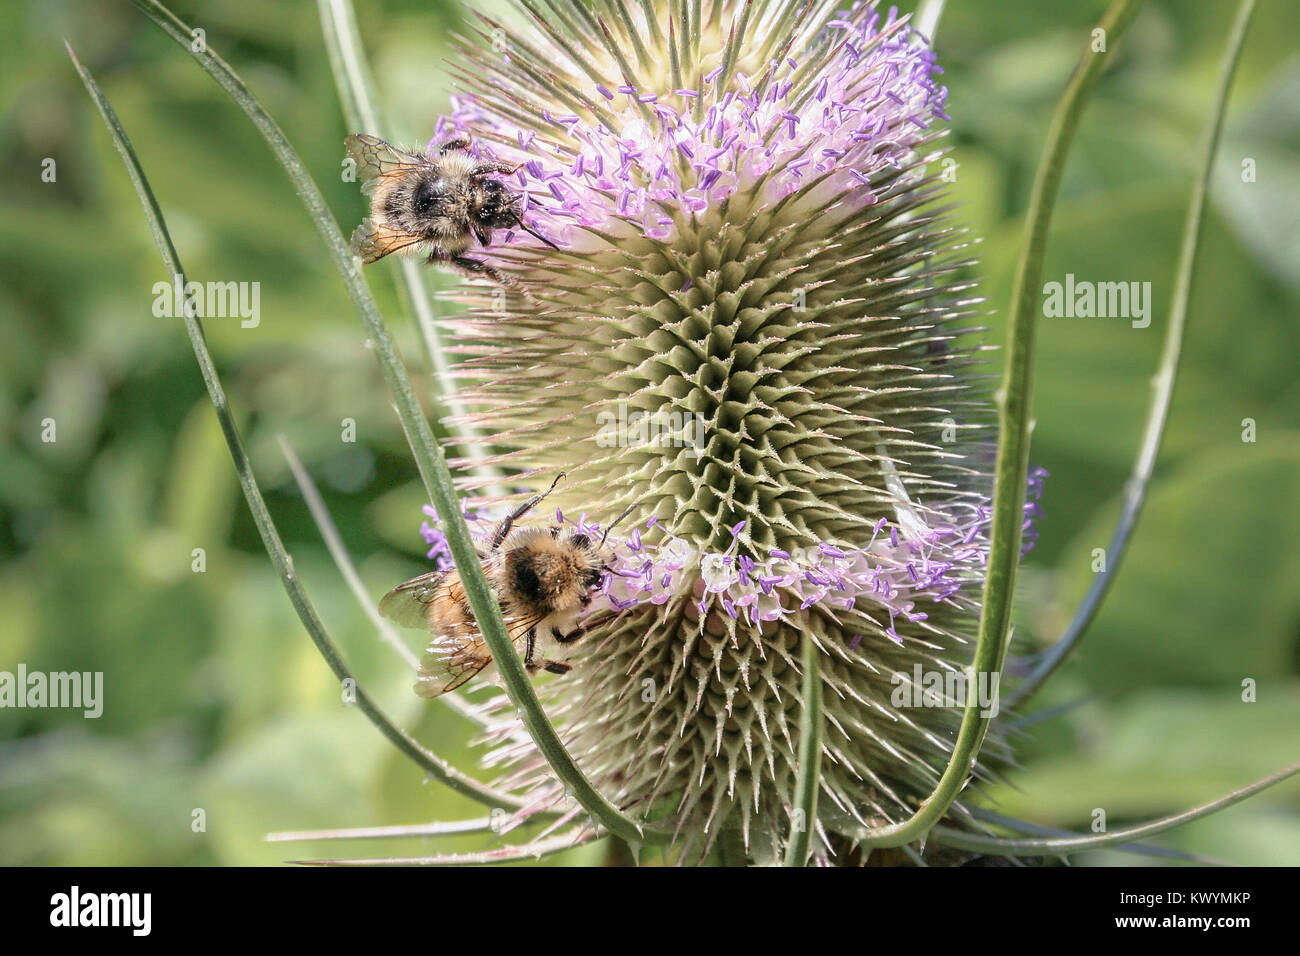 Contre un fond vert, deux bourdons sonder les fleurs violettes tubulaires d'un commun hérissés, se nourrissant de tête de cardère le nectar de l'usine. Banque D'Images